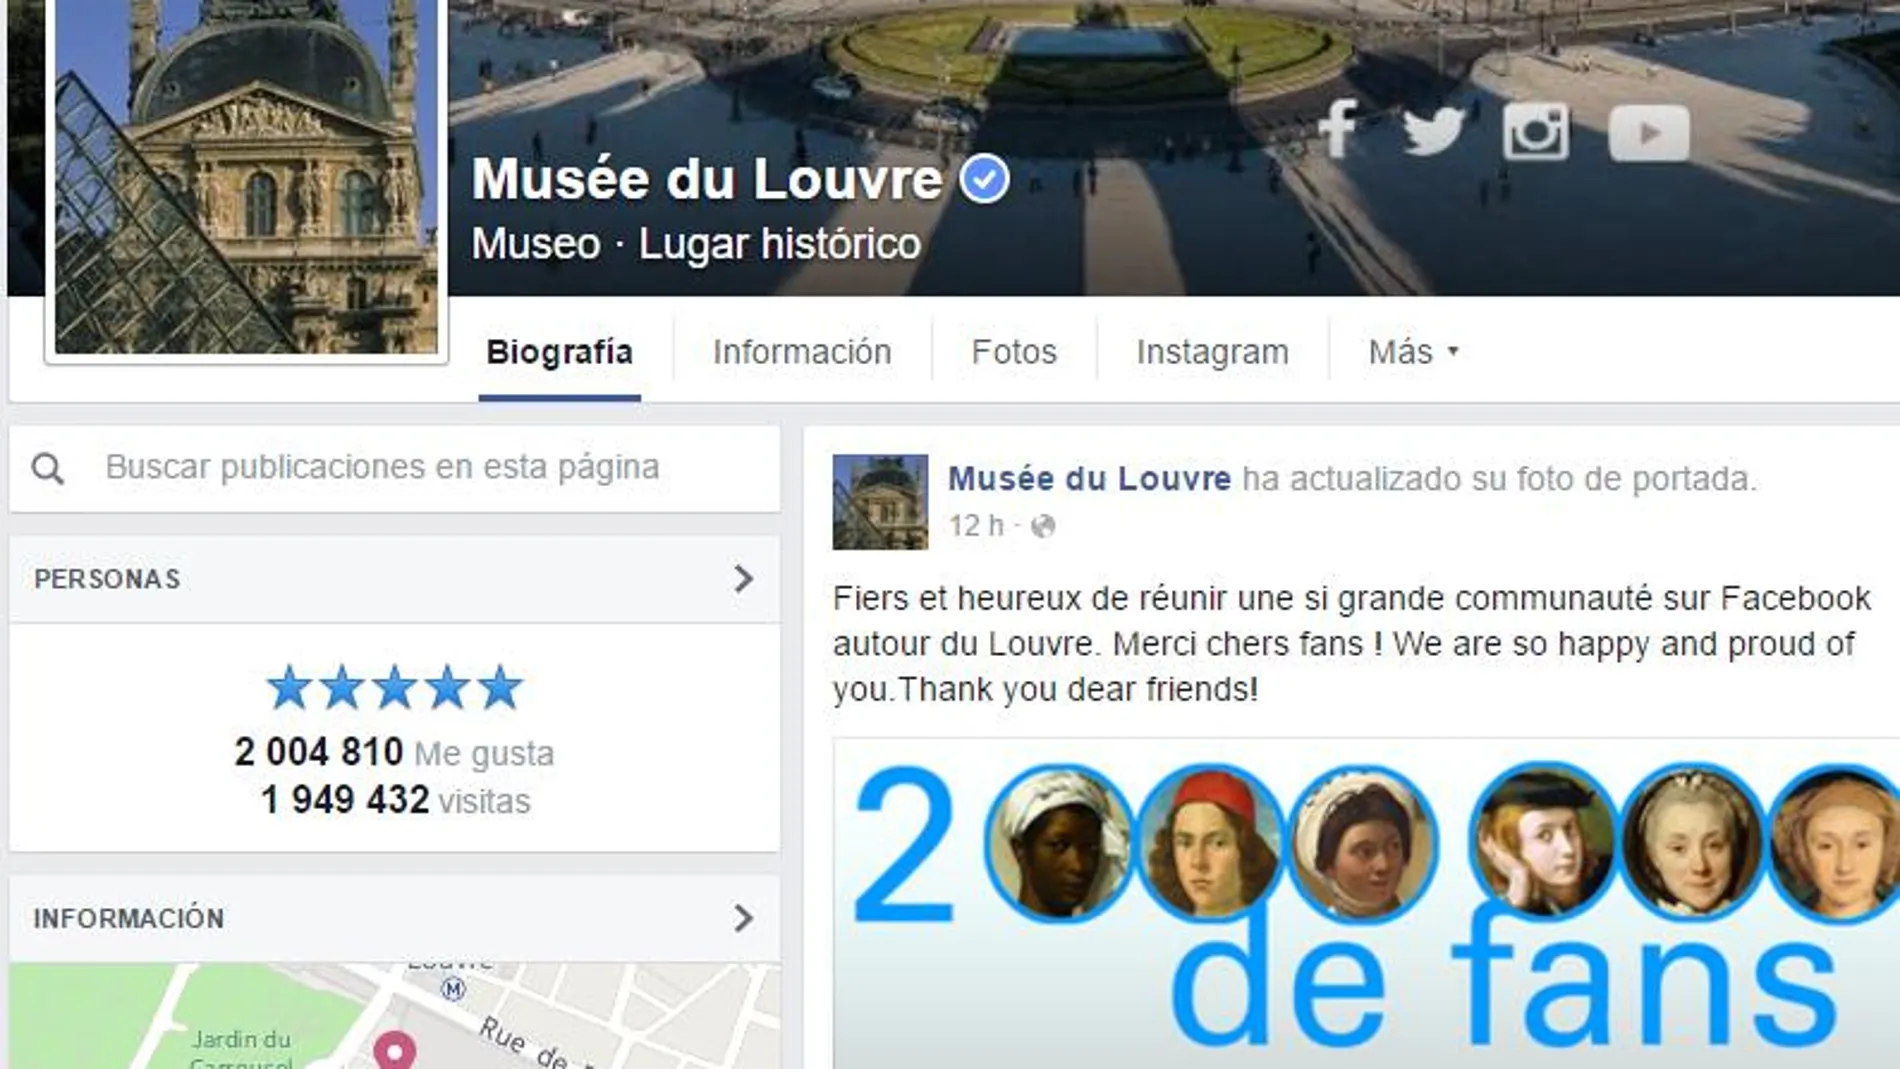 Página del Museo del Louvre en Facebook